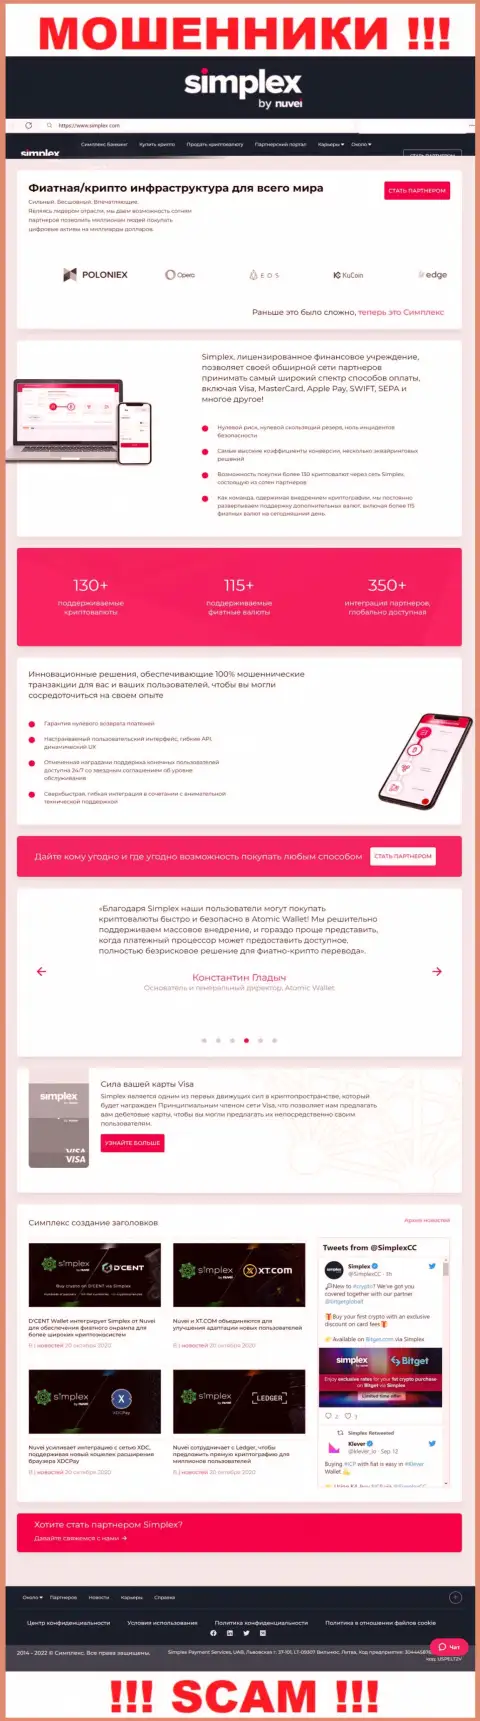 Вид официальной интернет страницы жульнической компании Симплекс (ЮС), Инк.